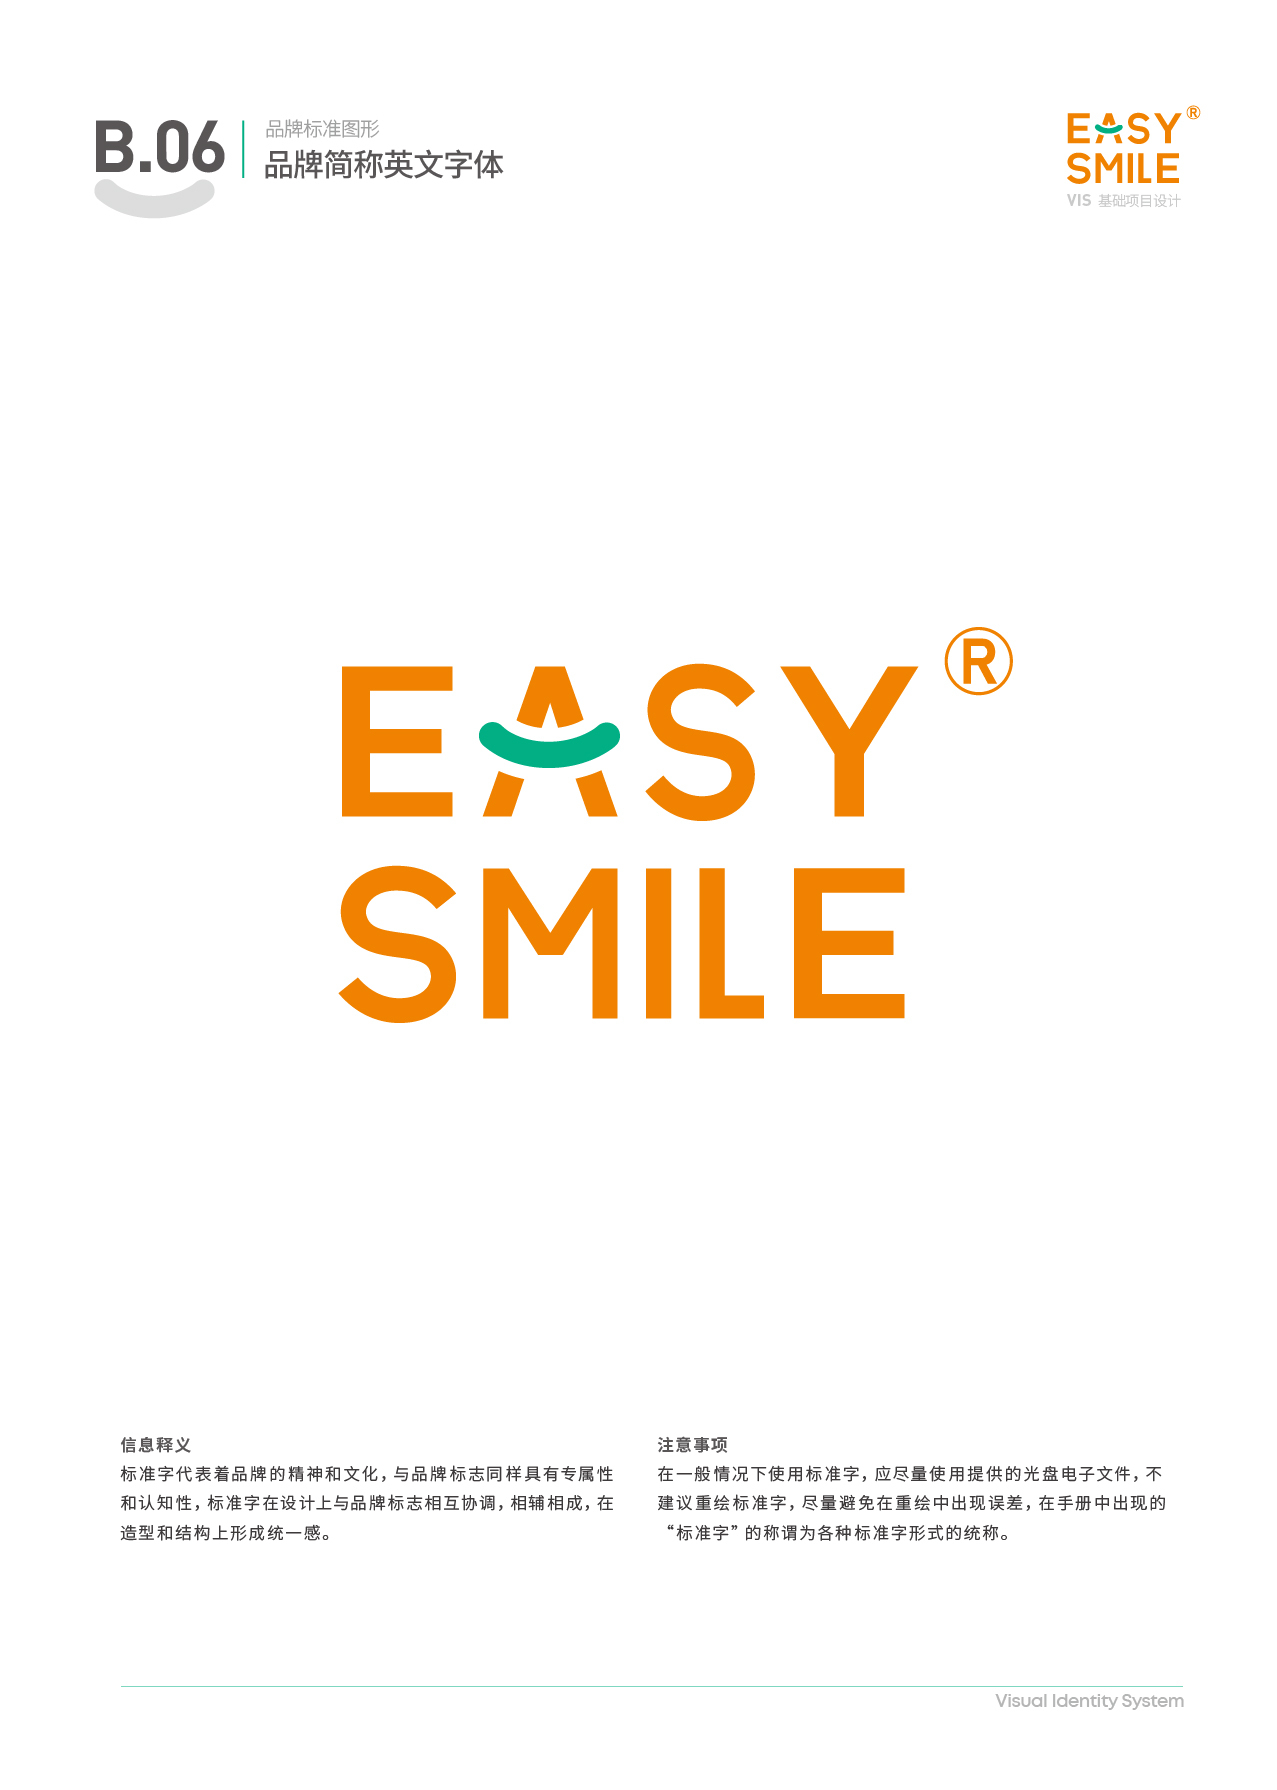 Easysmile 轻松笑品牌VIS图15